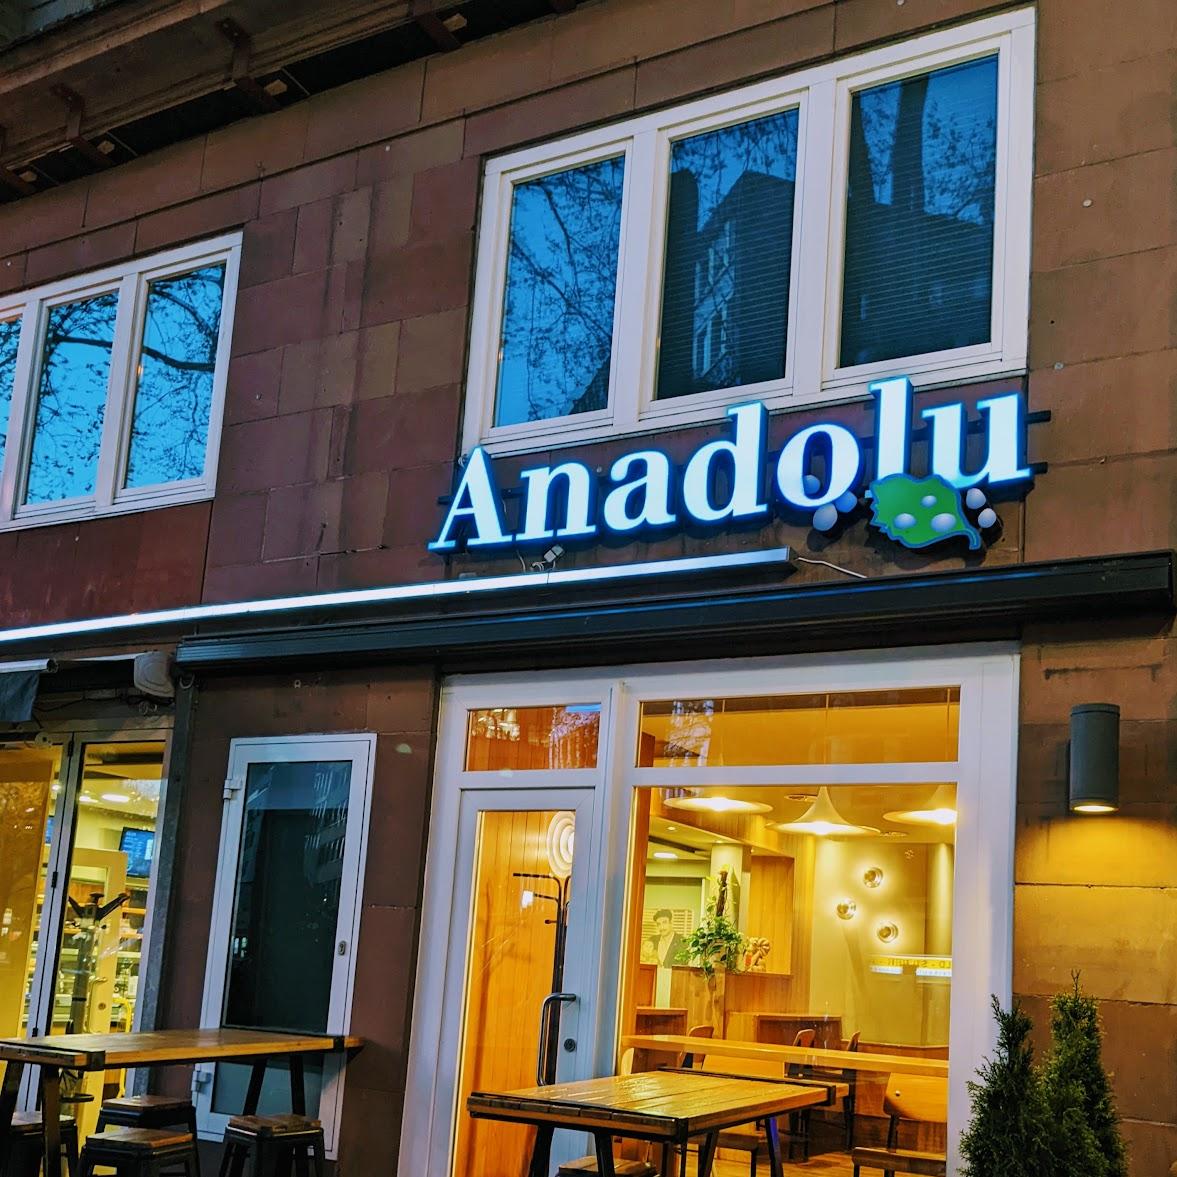 Restaurant "Anadolu" in Düsseldorf